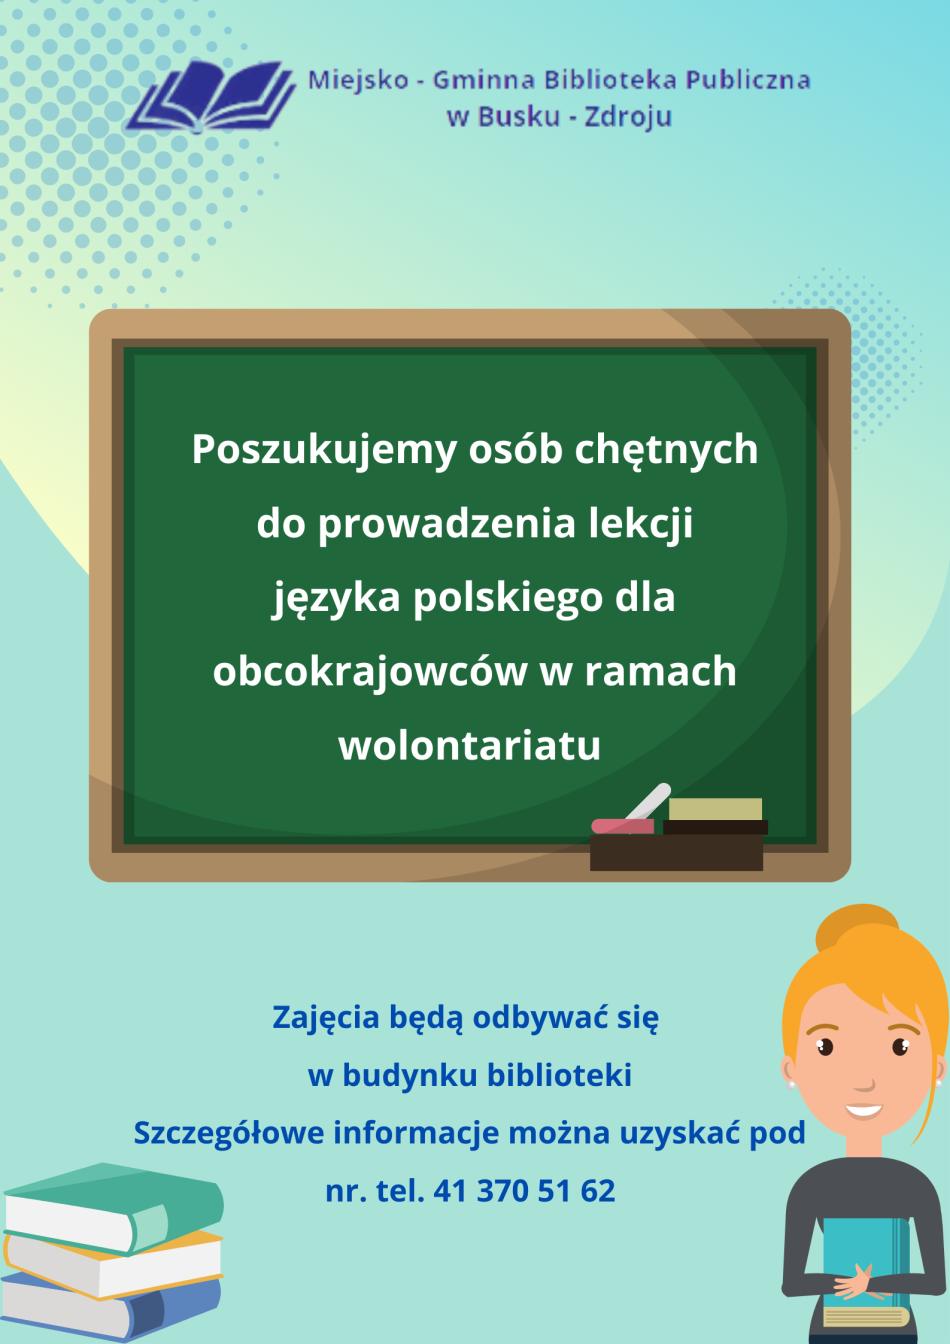 Poszukujemy osób chętnych do prowadzenia lekcji języka polskiego dla obcokrajowców w ramach wolontariatu.